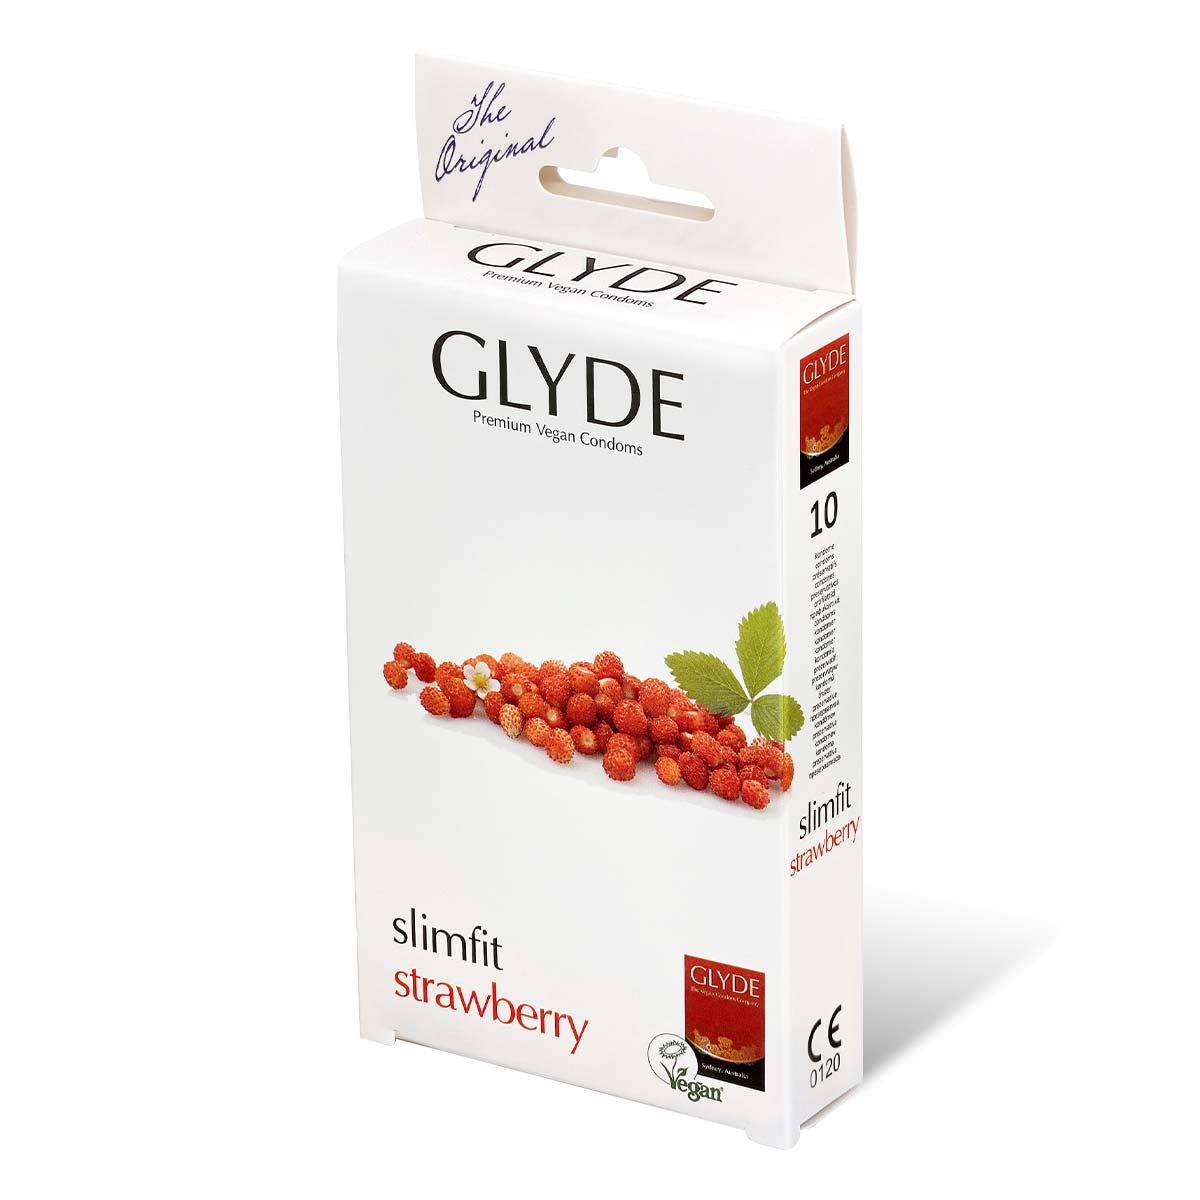 Glyde 格蕾迪 素食主义安全套 紧身草莓香 49mm 10 片装 乳胶安全套-p_1